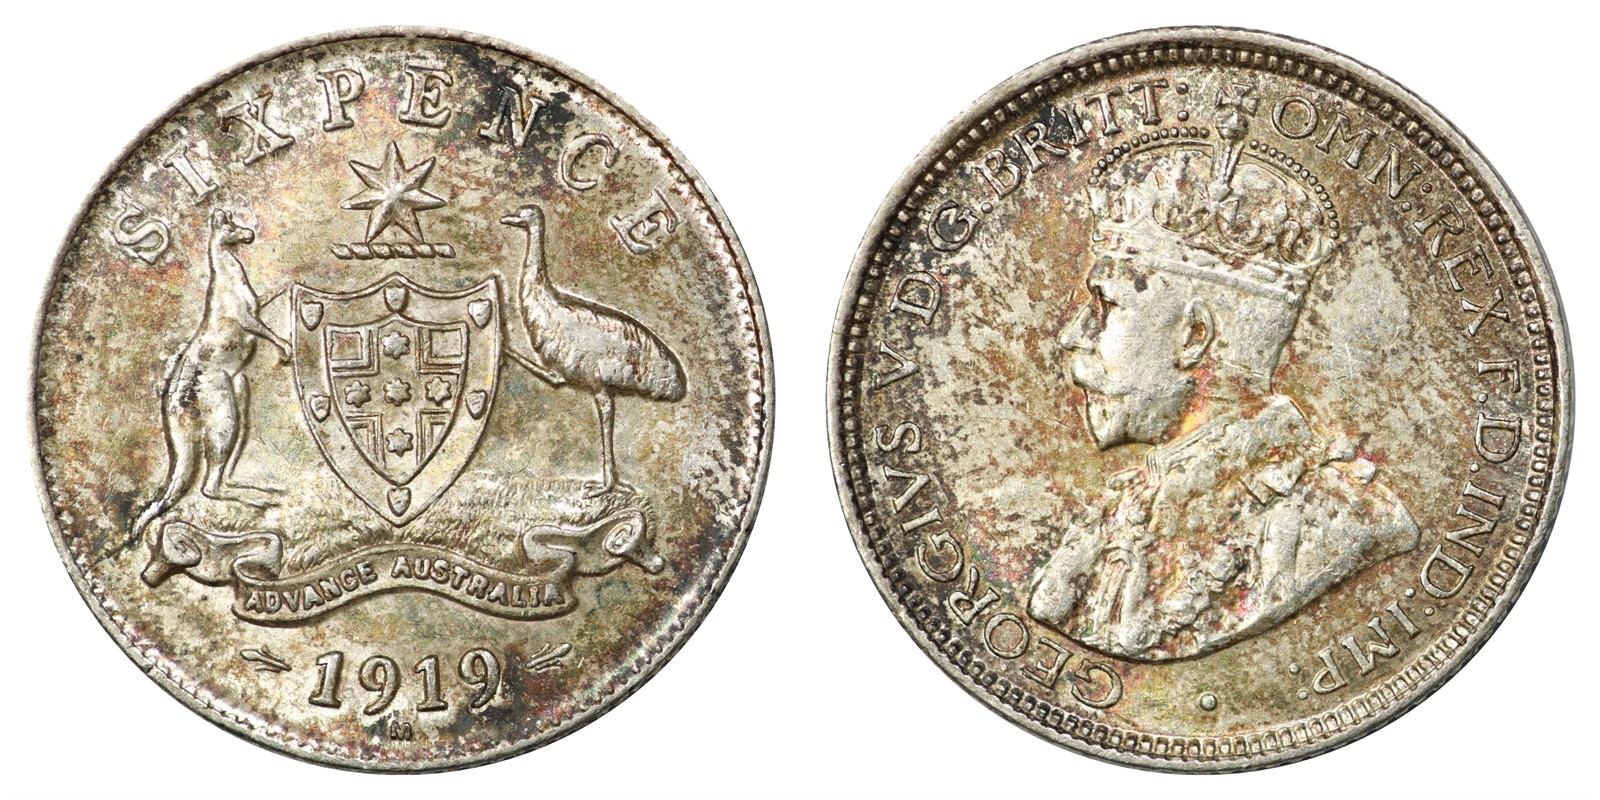 Australia - George V - 6 Pence 1919 M - AU *